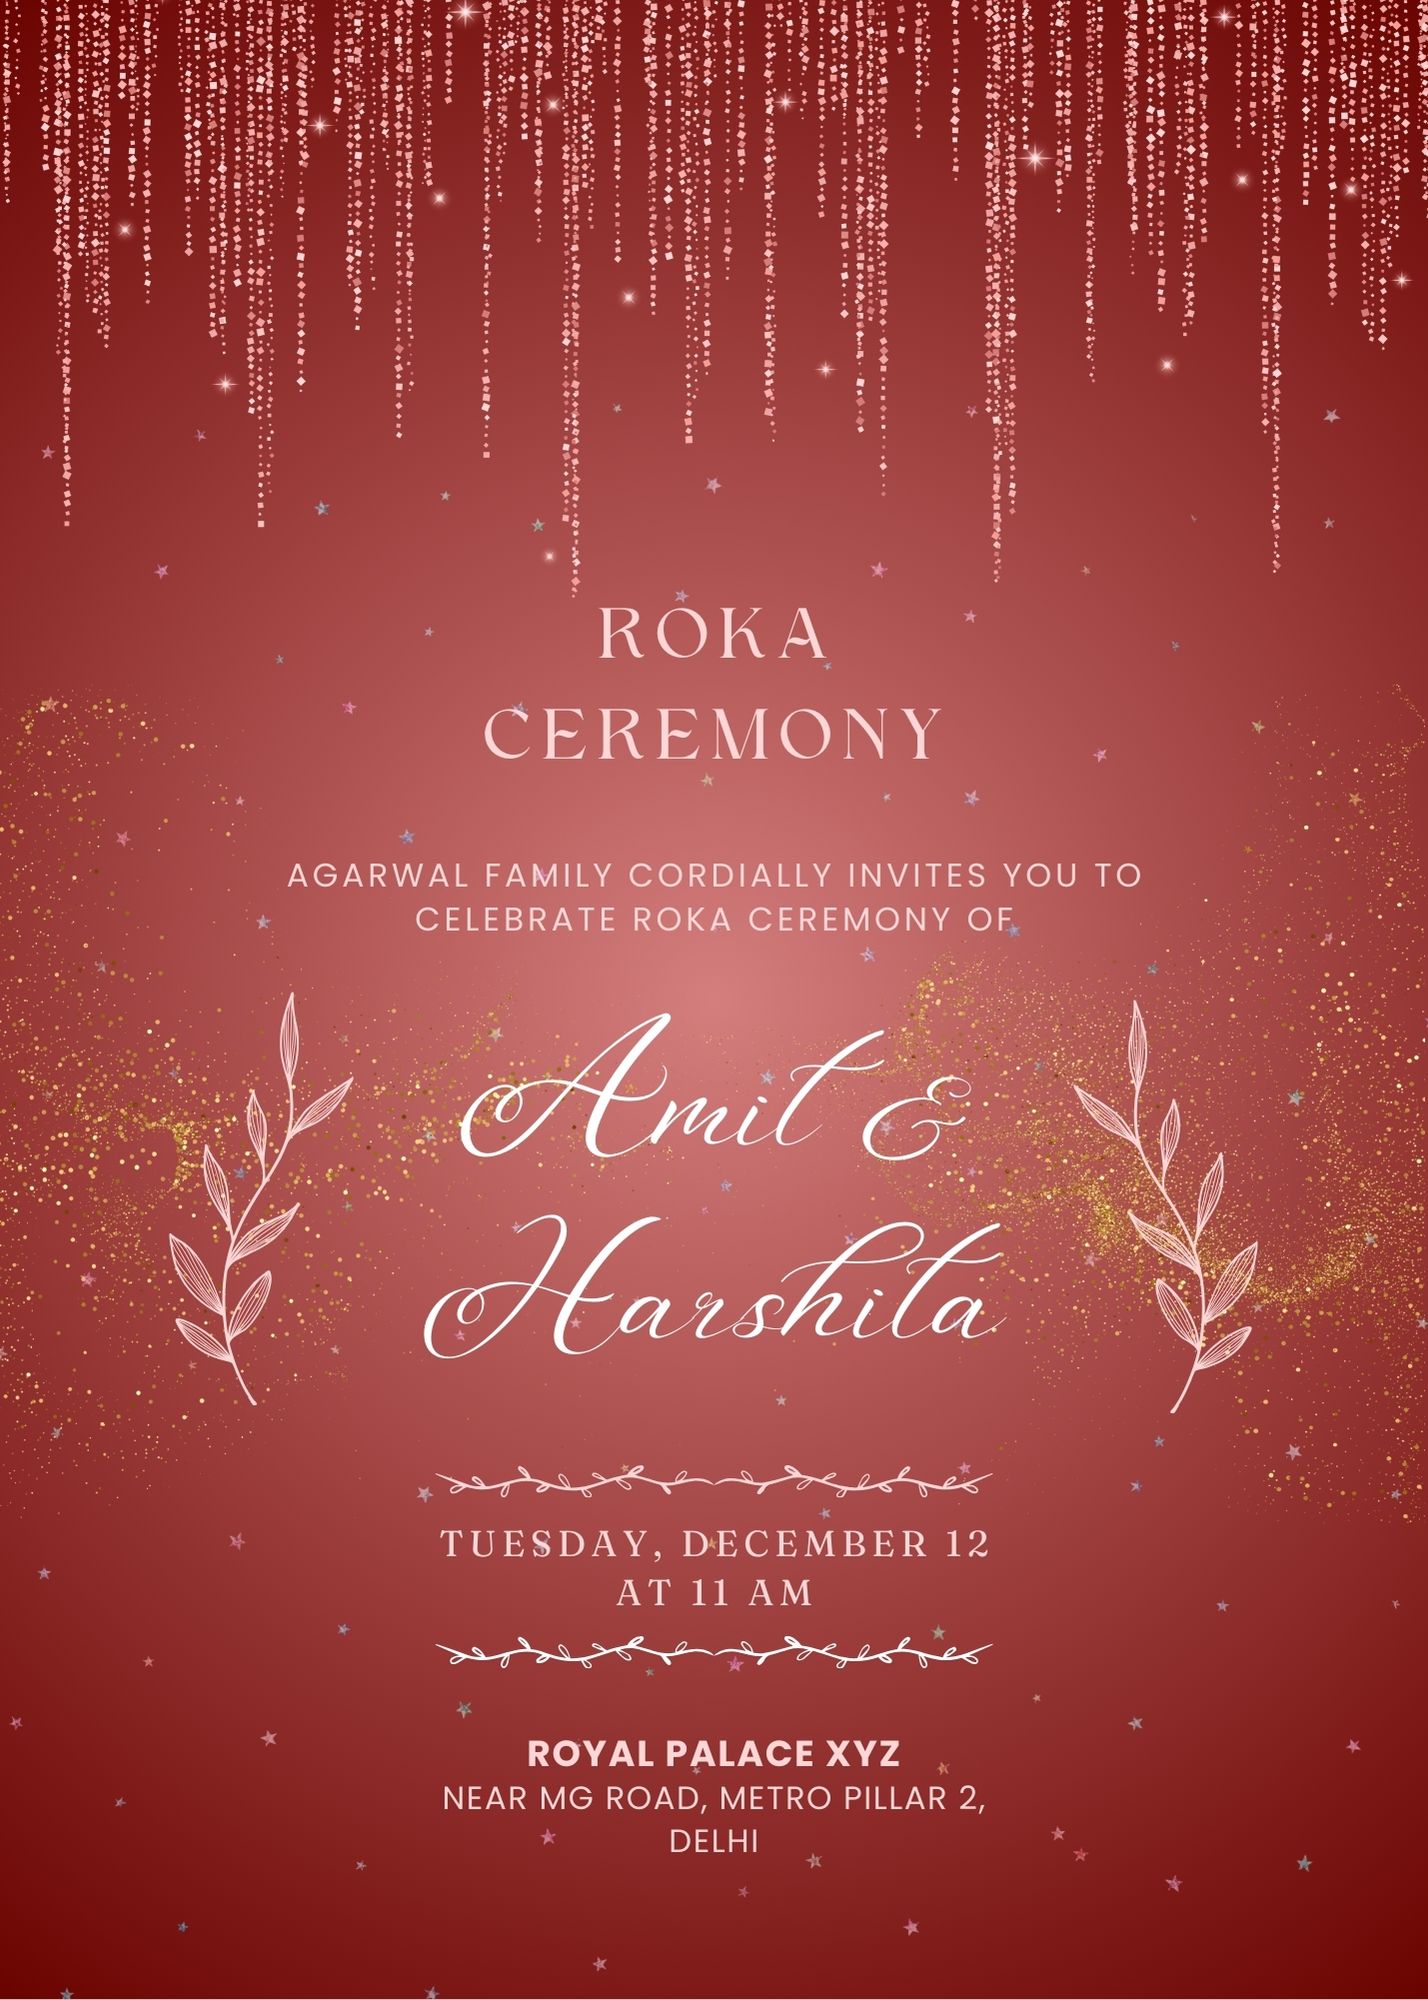 Classy Roka invitation